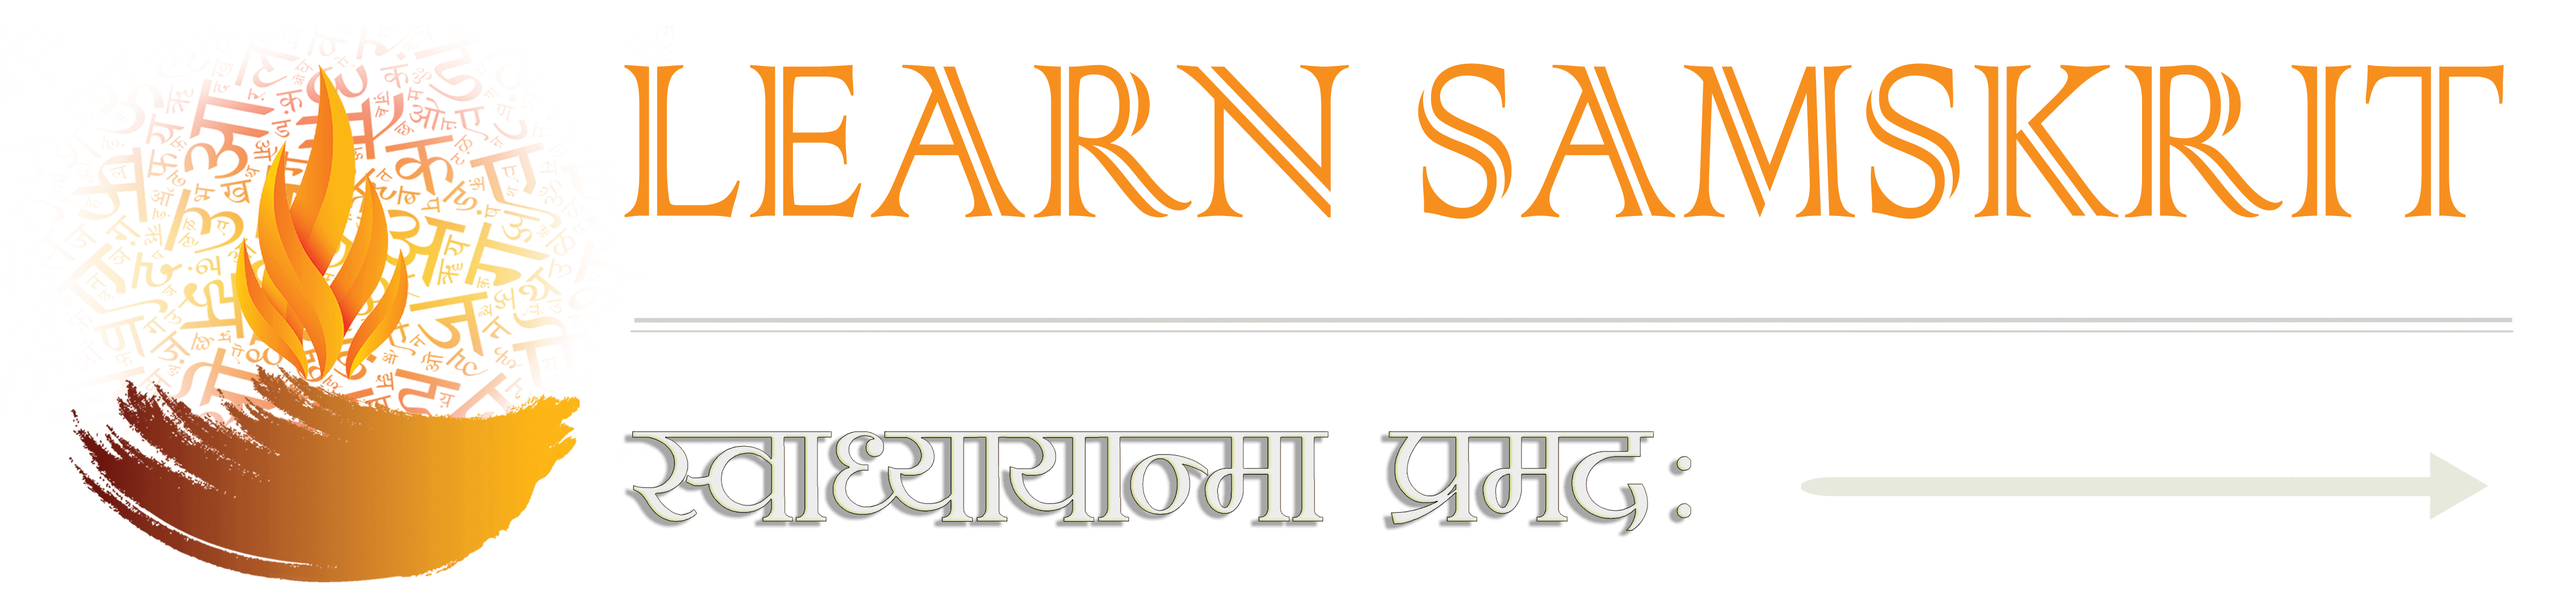 Sanskrit Diwas Festival Logo Artwork Vector Stock Vector (Royalty Free)  2347982865 | Shutterstock